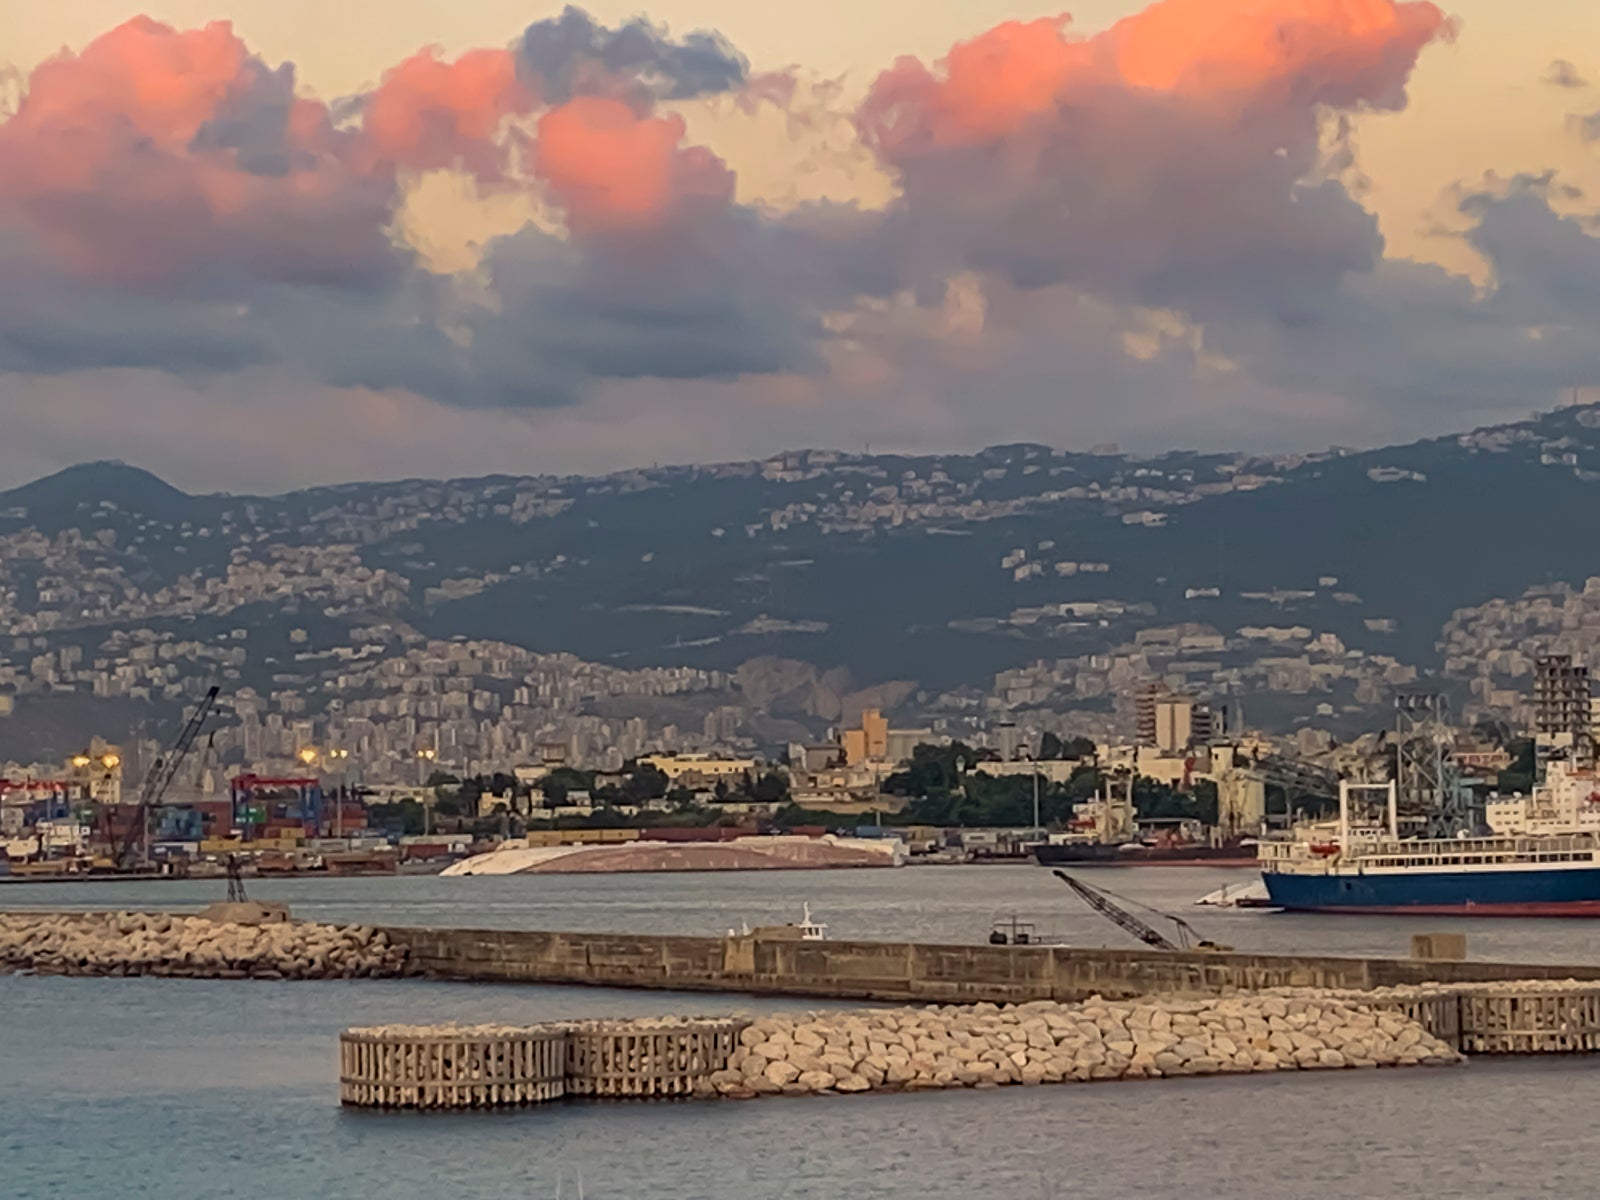 Uma foto da paisagem do porto de Beirute